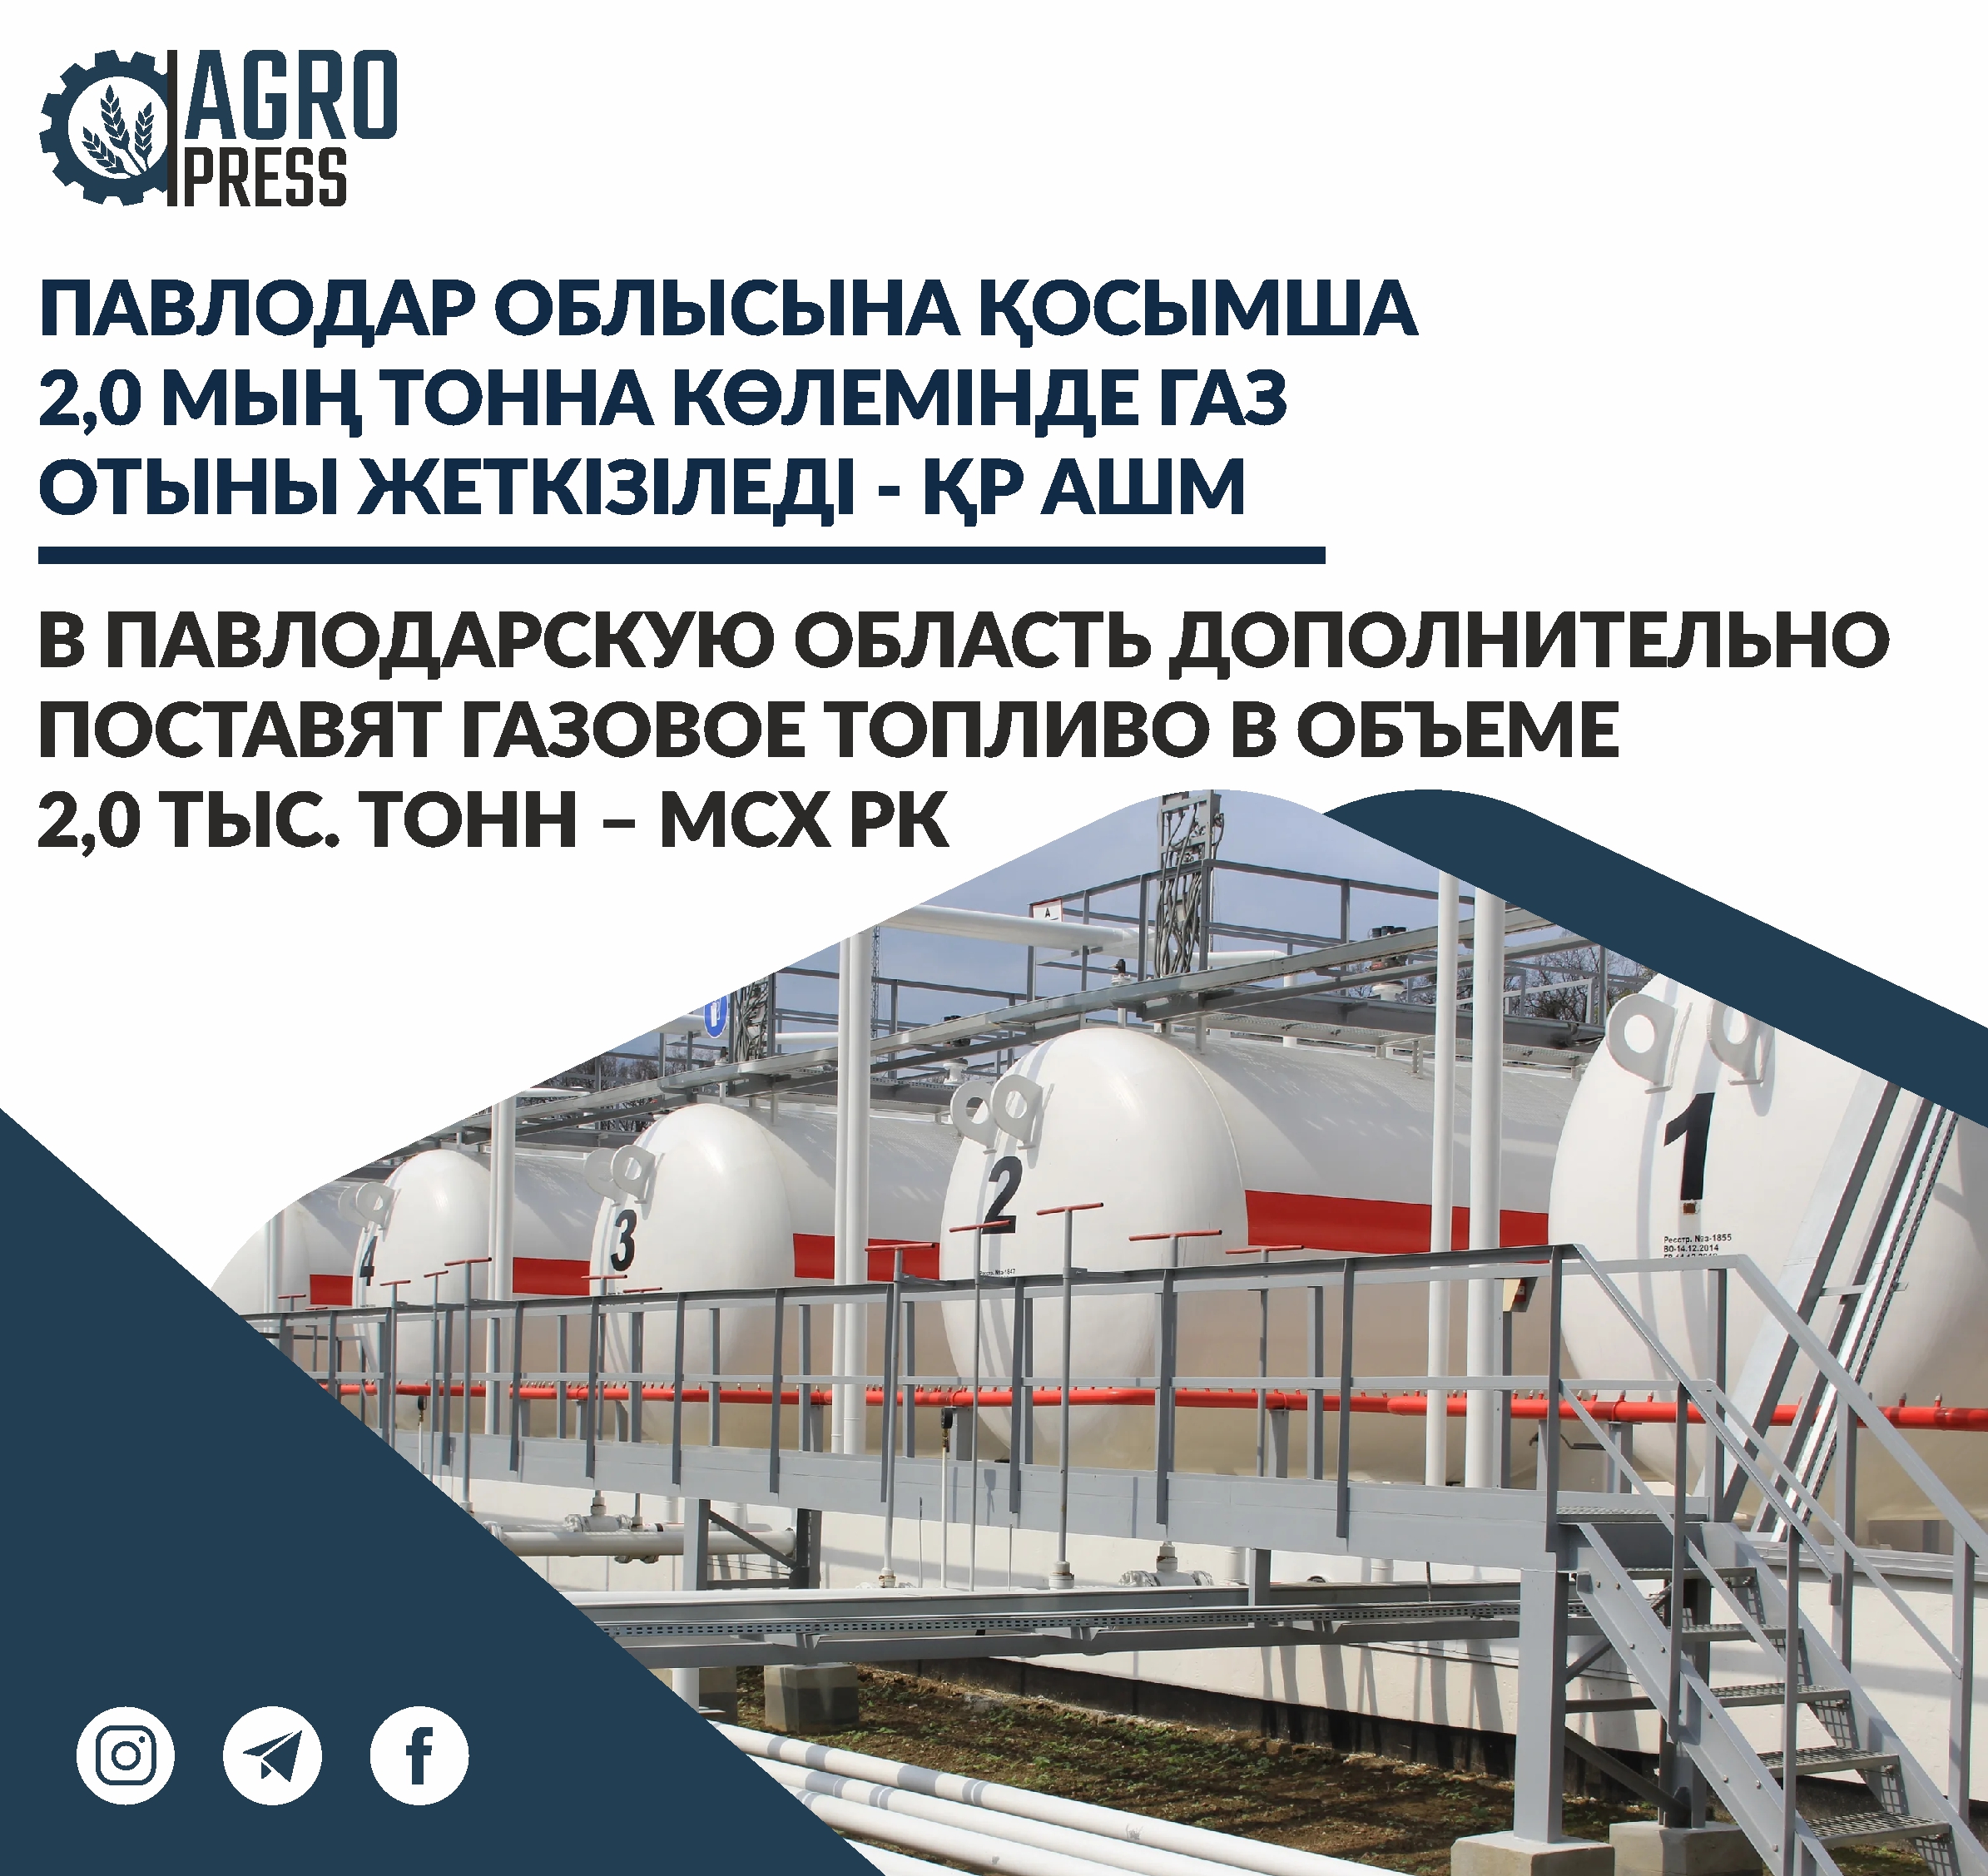 В Павлодарскую область дополнительно поставят газовое топливо в объеме 2,0 тыс. тонн – МСХ РК